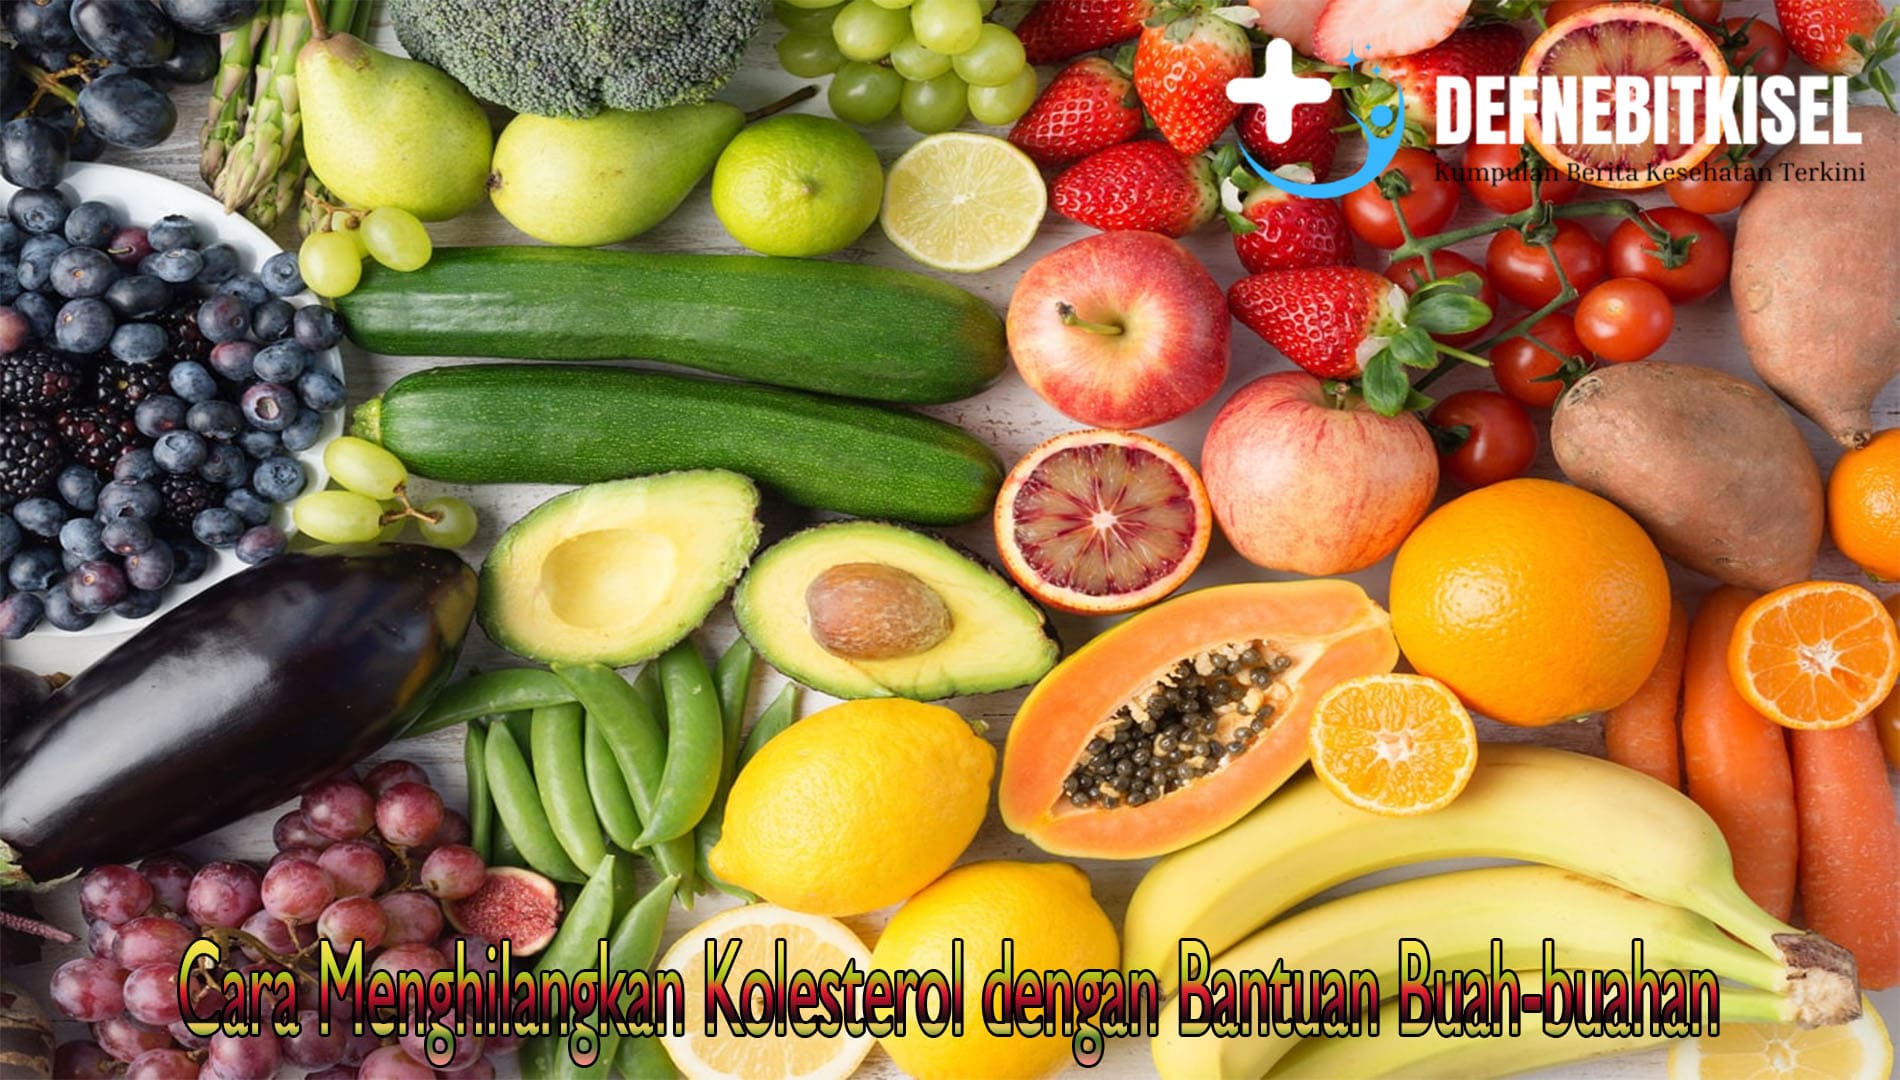 Cara Menghilangkan Kolesterol dengan Bantuan Buah-buahan